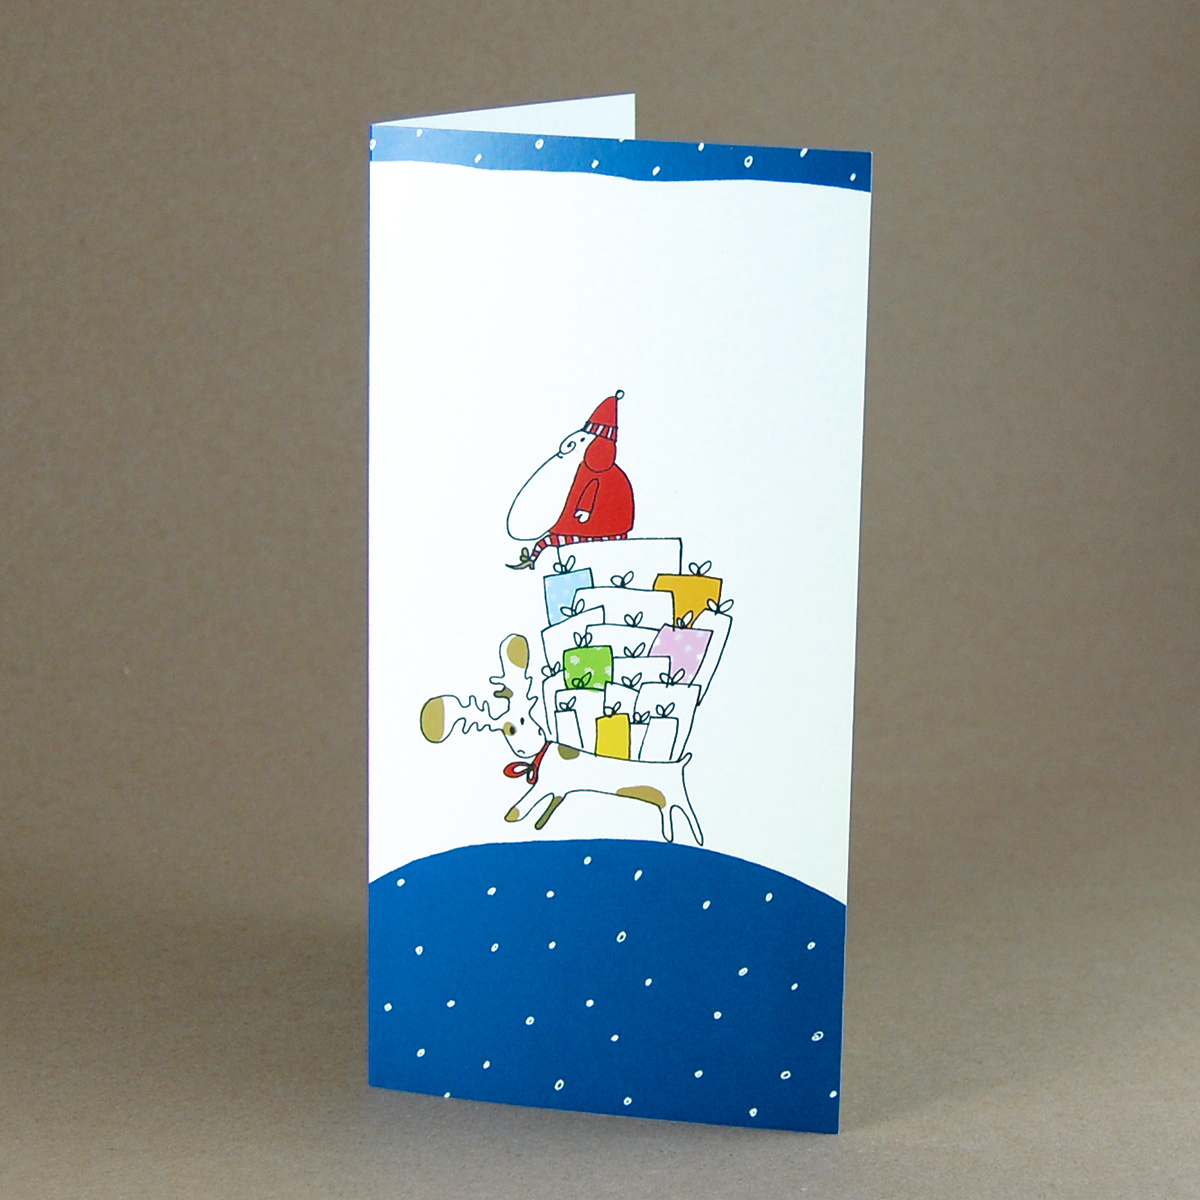 witzige Weihnachtskarten mit reitendem Weihnachtsmannn auf einem riesigen Geschenkehaufen